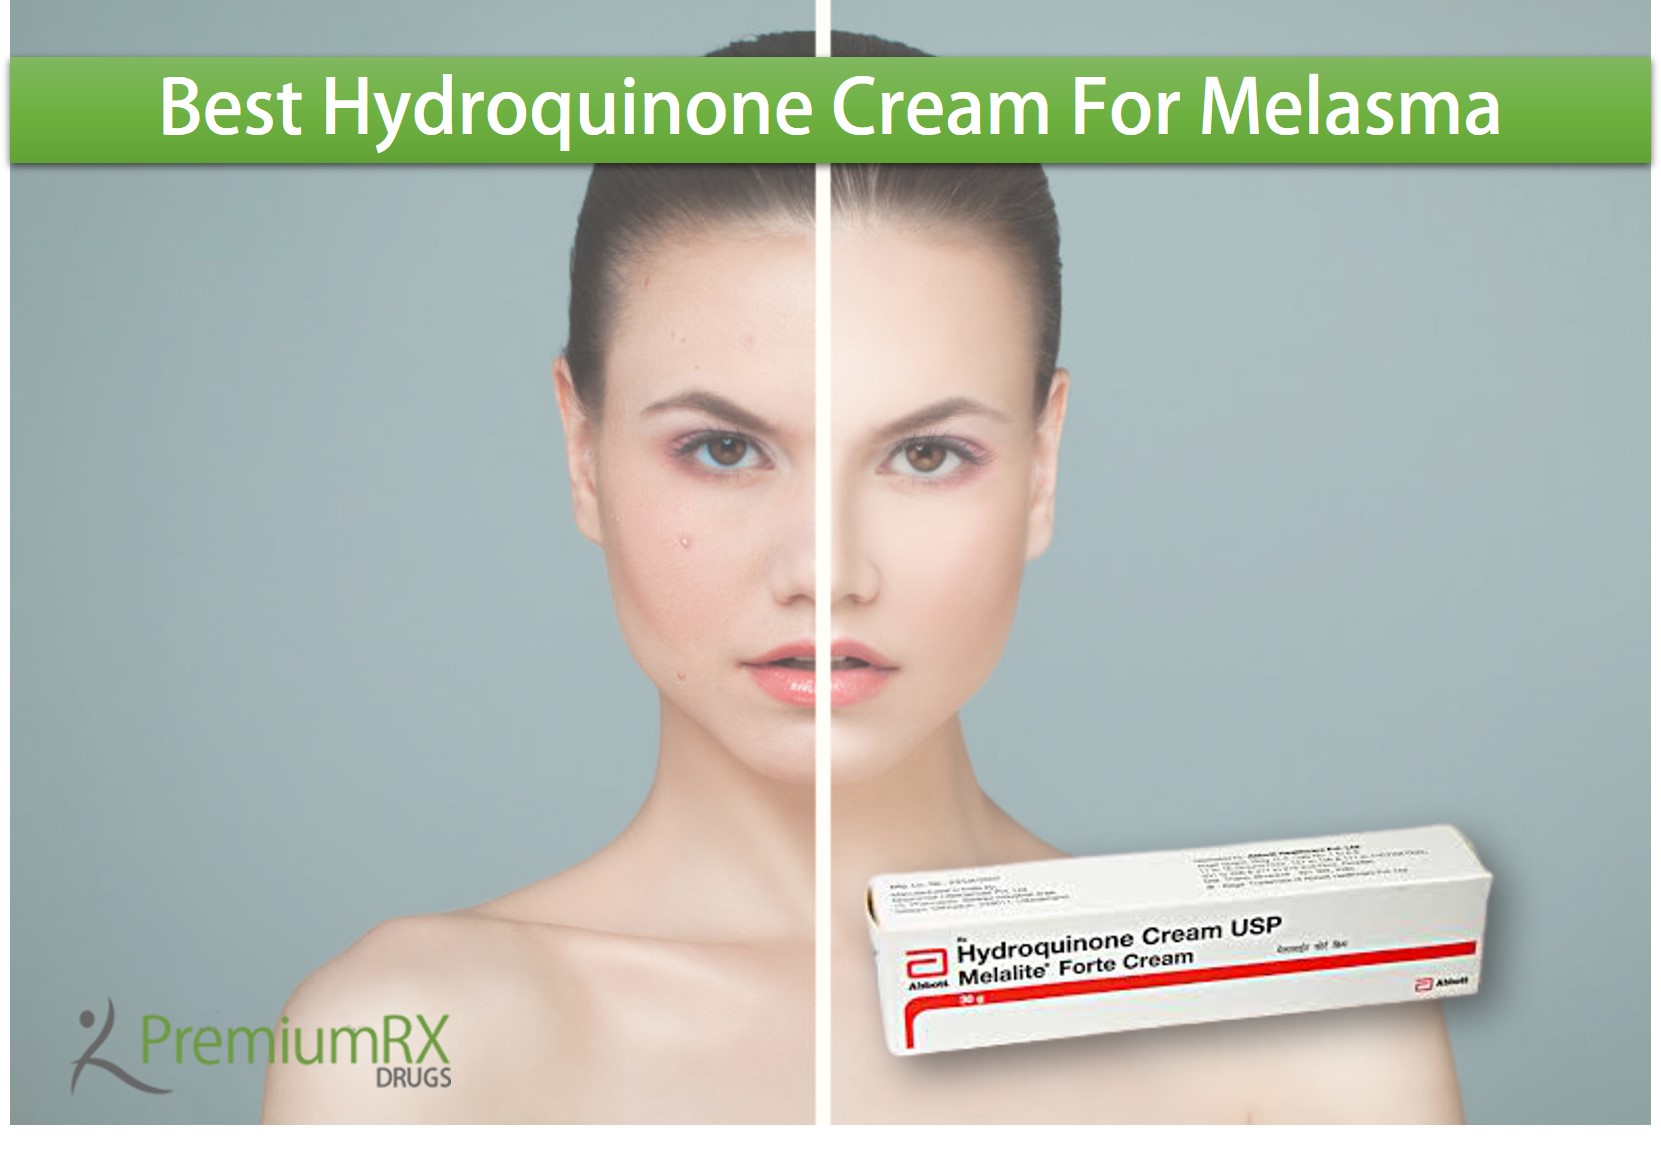 Hydroquinone Cream For Melasma